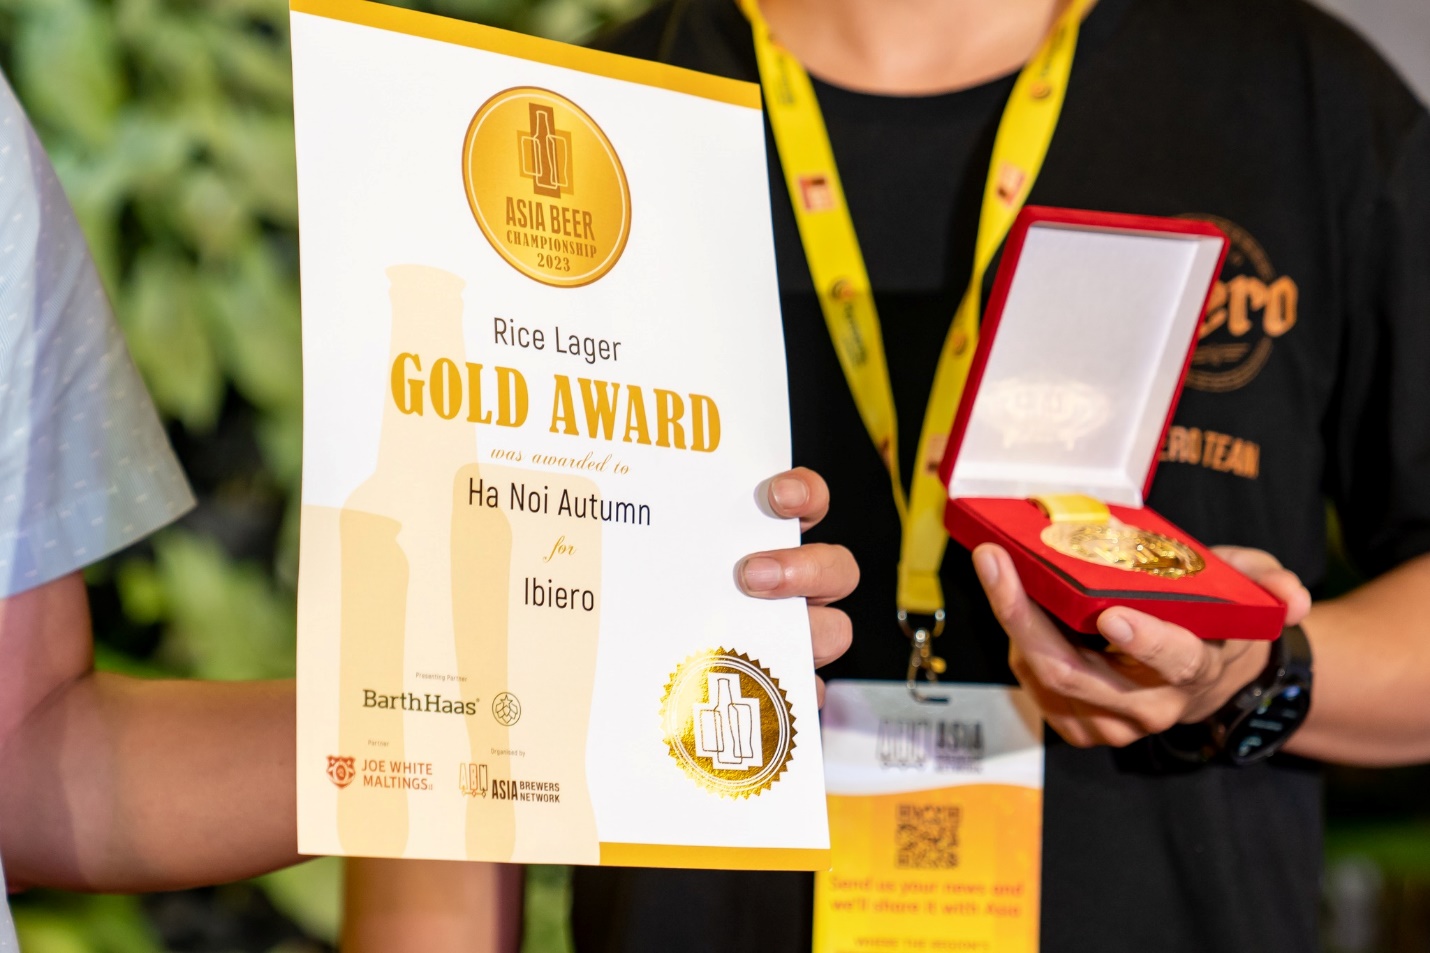 Bia Cốm của iBiero đoạt Giải Vàng tại Brew Asia 2023 - Ảnh 1.